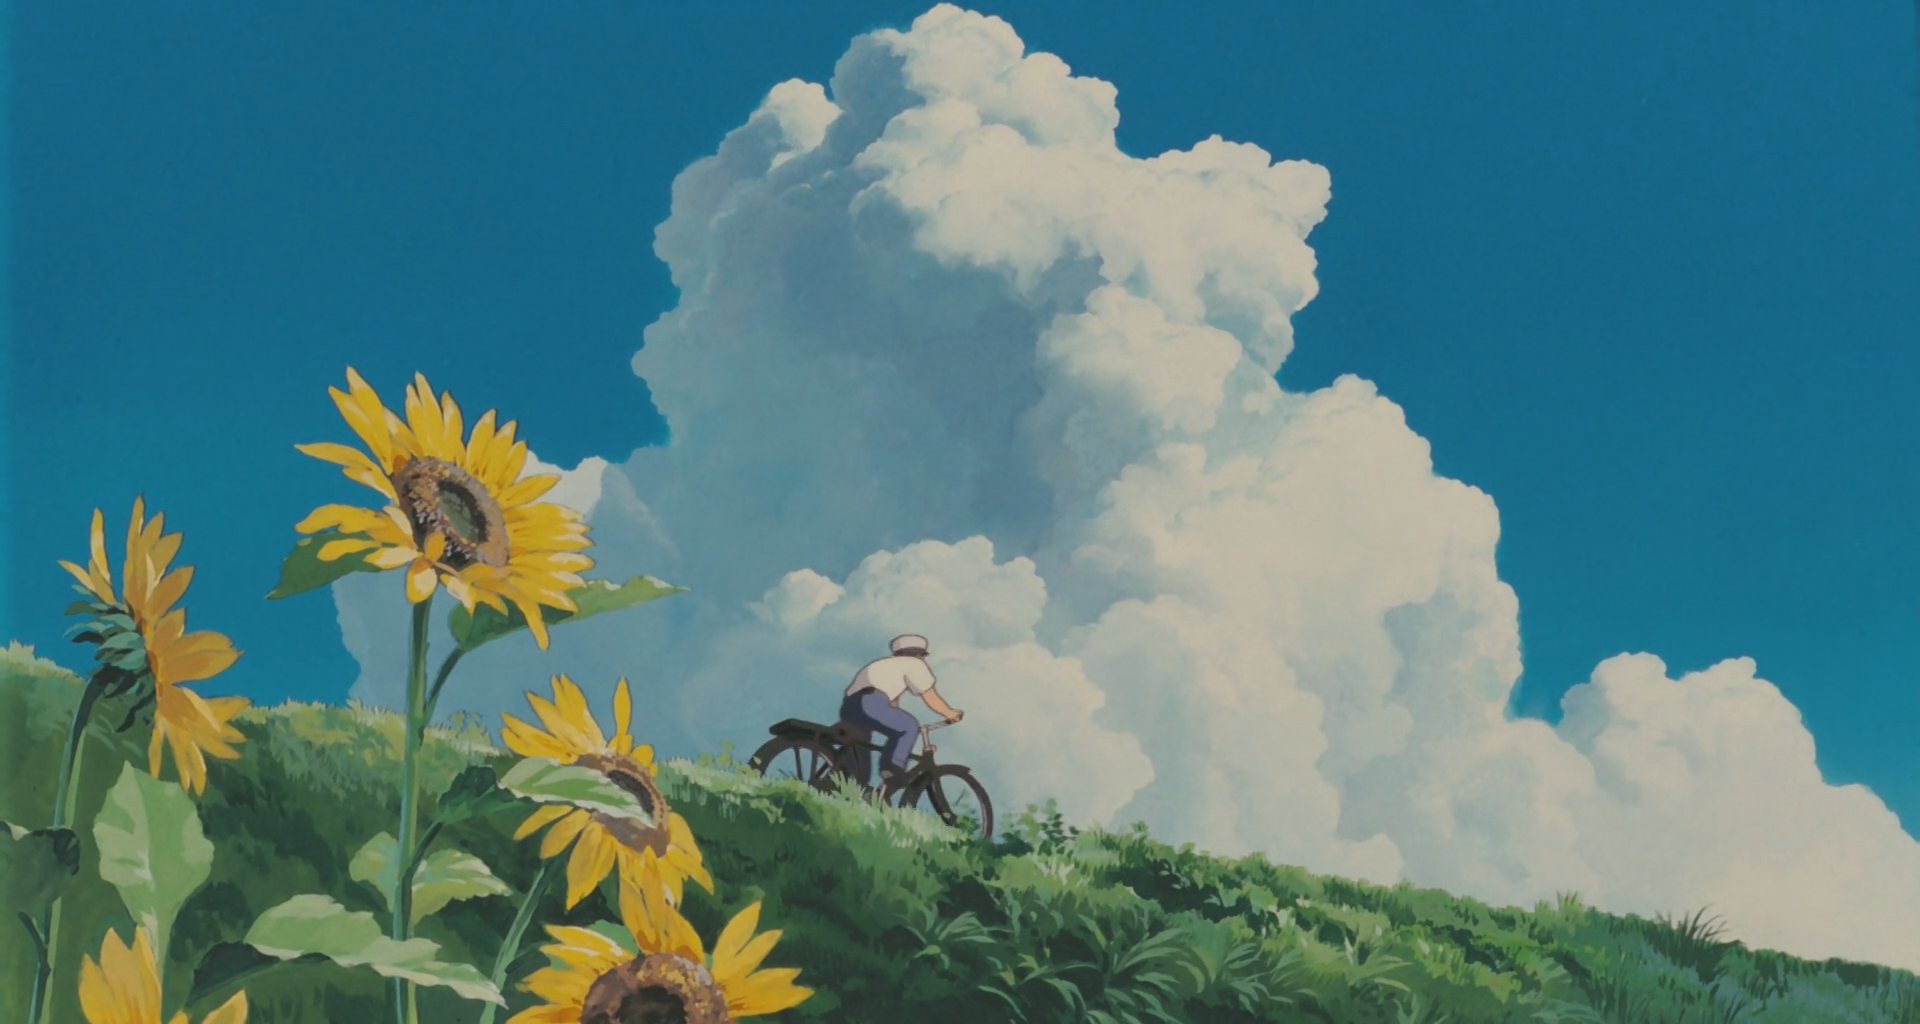 100 Studio Ghibli wallpapers Awesome  ranime